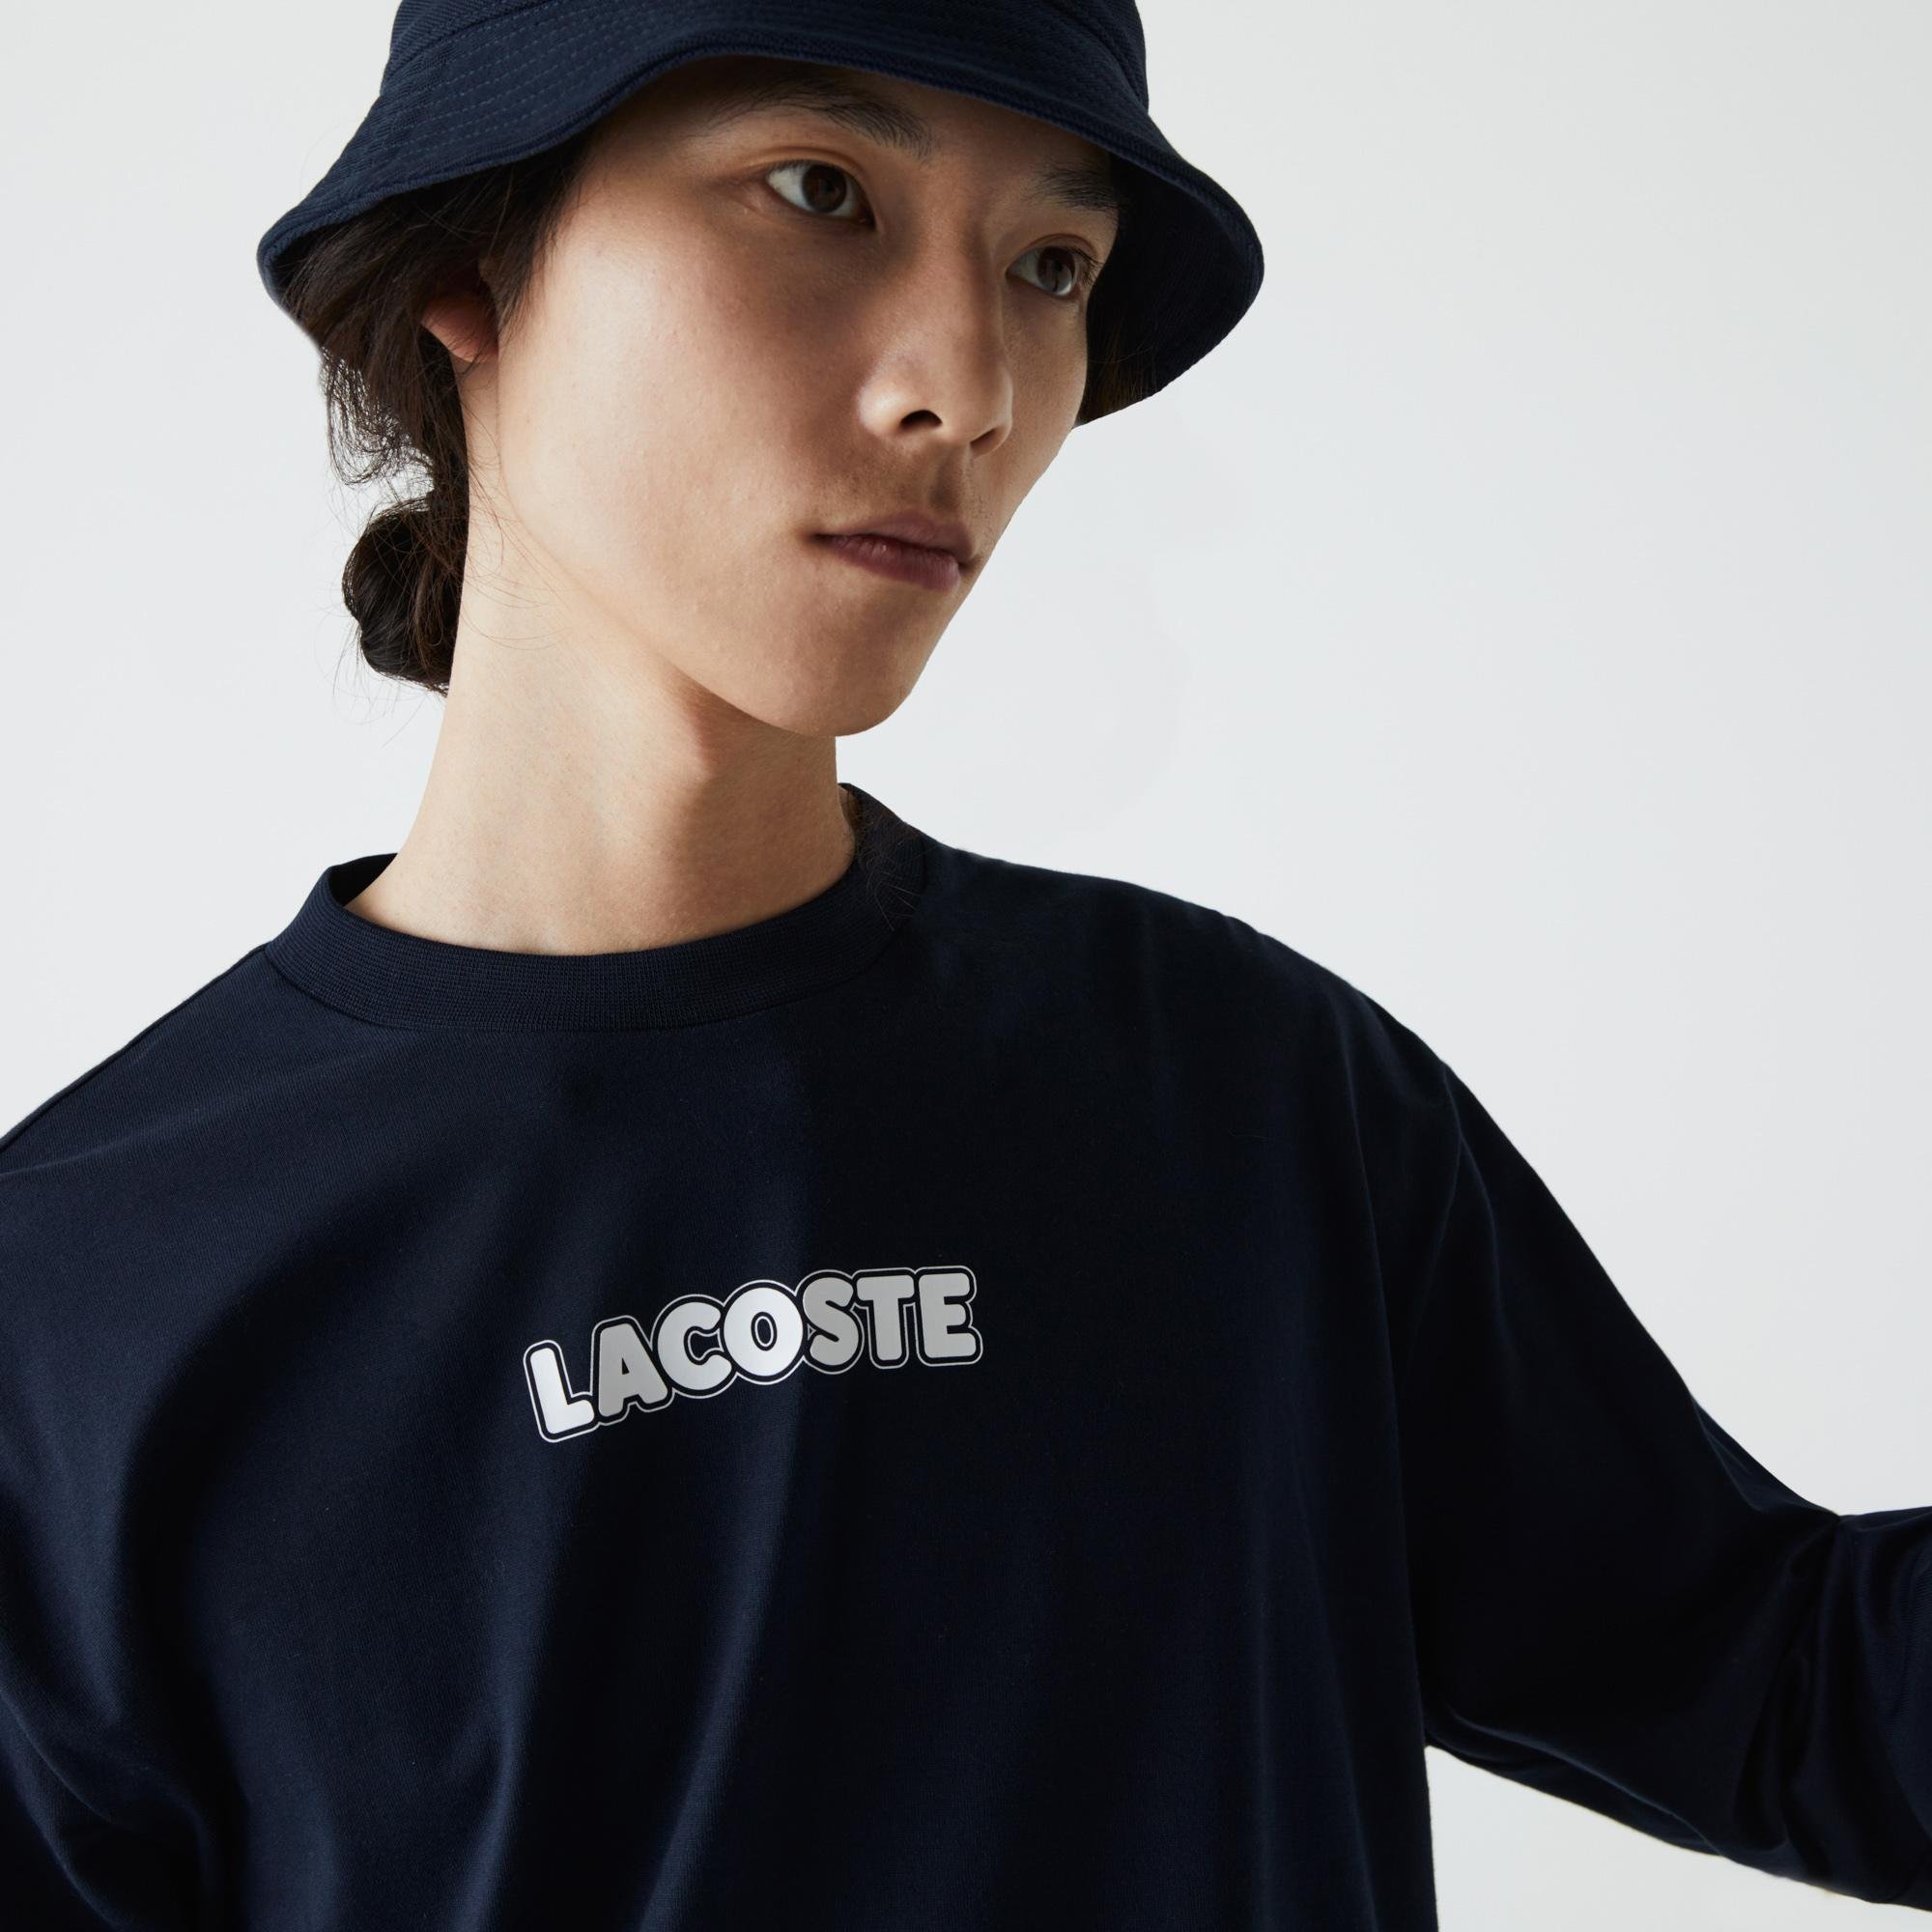 Lacoste Men's SPORT Crocodile Print Cotton Jersey T-shirt